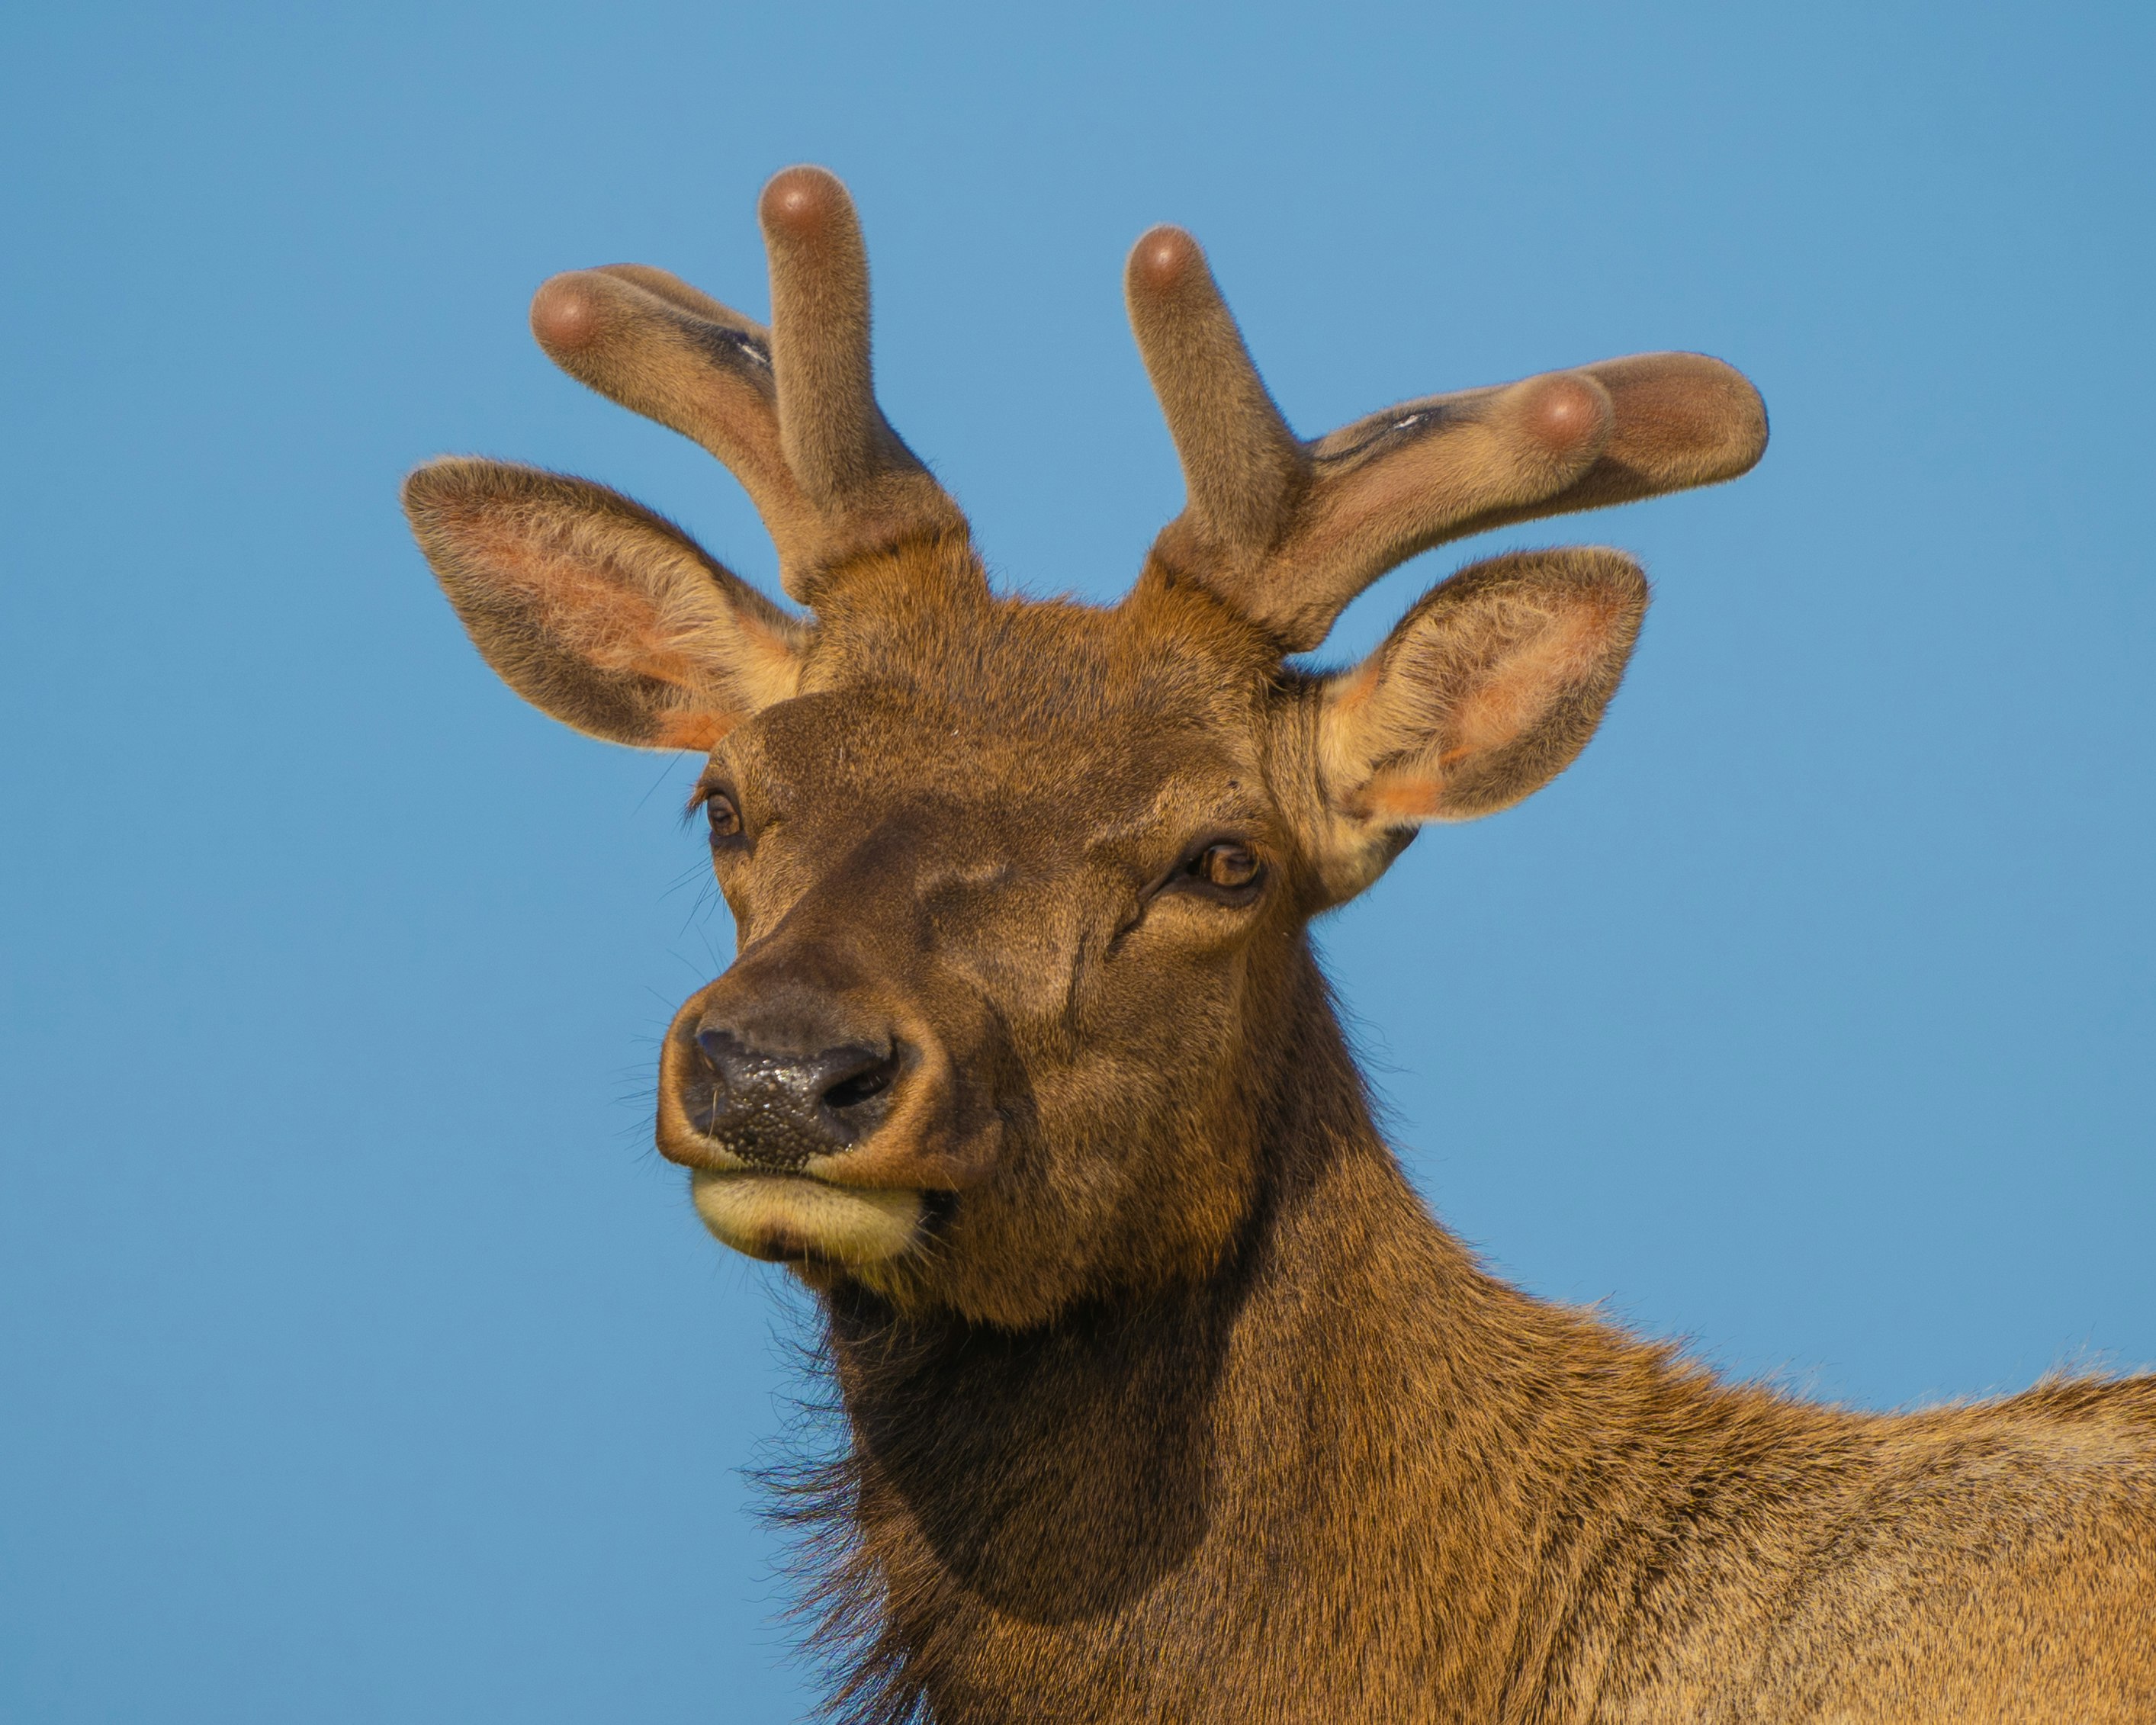 brown deer under blue sky during daytime